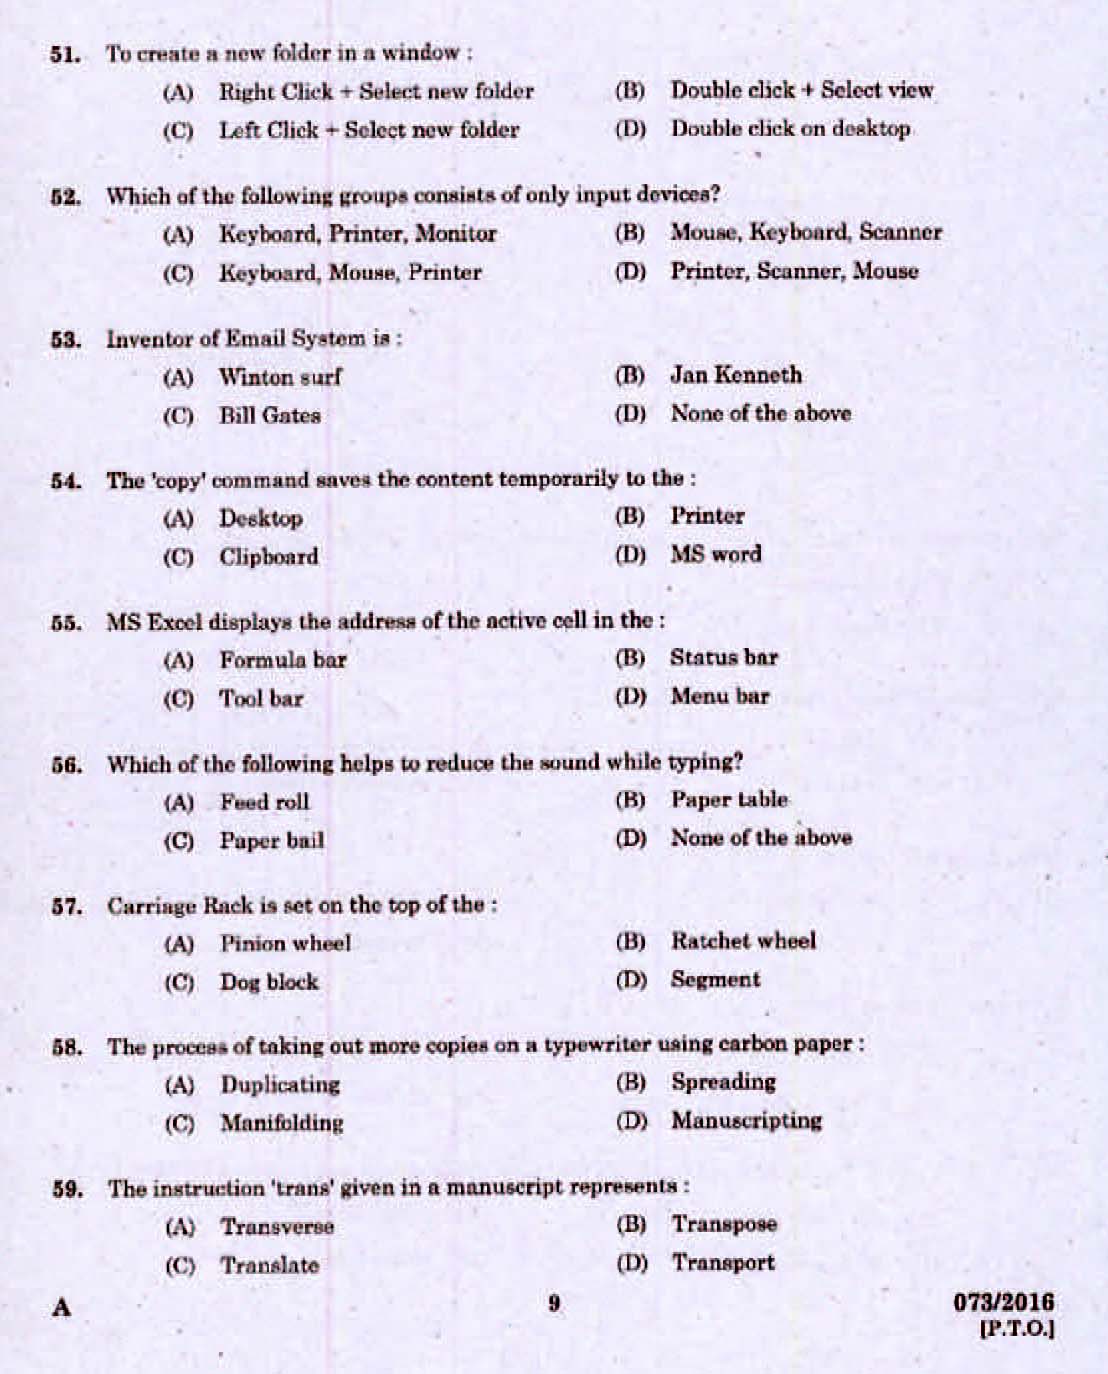 Kerala PSC Computer Assistant Grade II Exam 2016 Question Paper Code 0732016 7